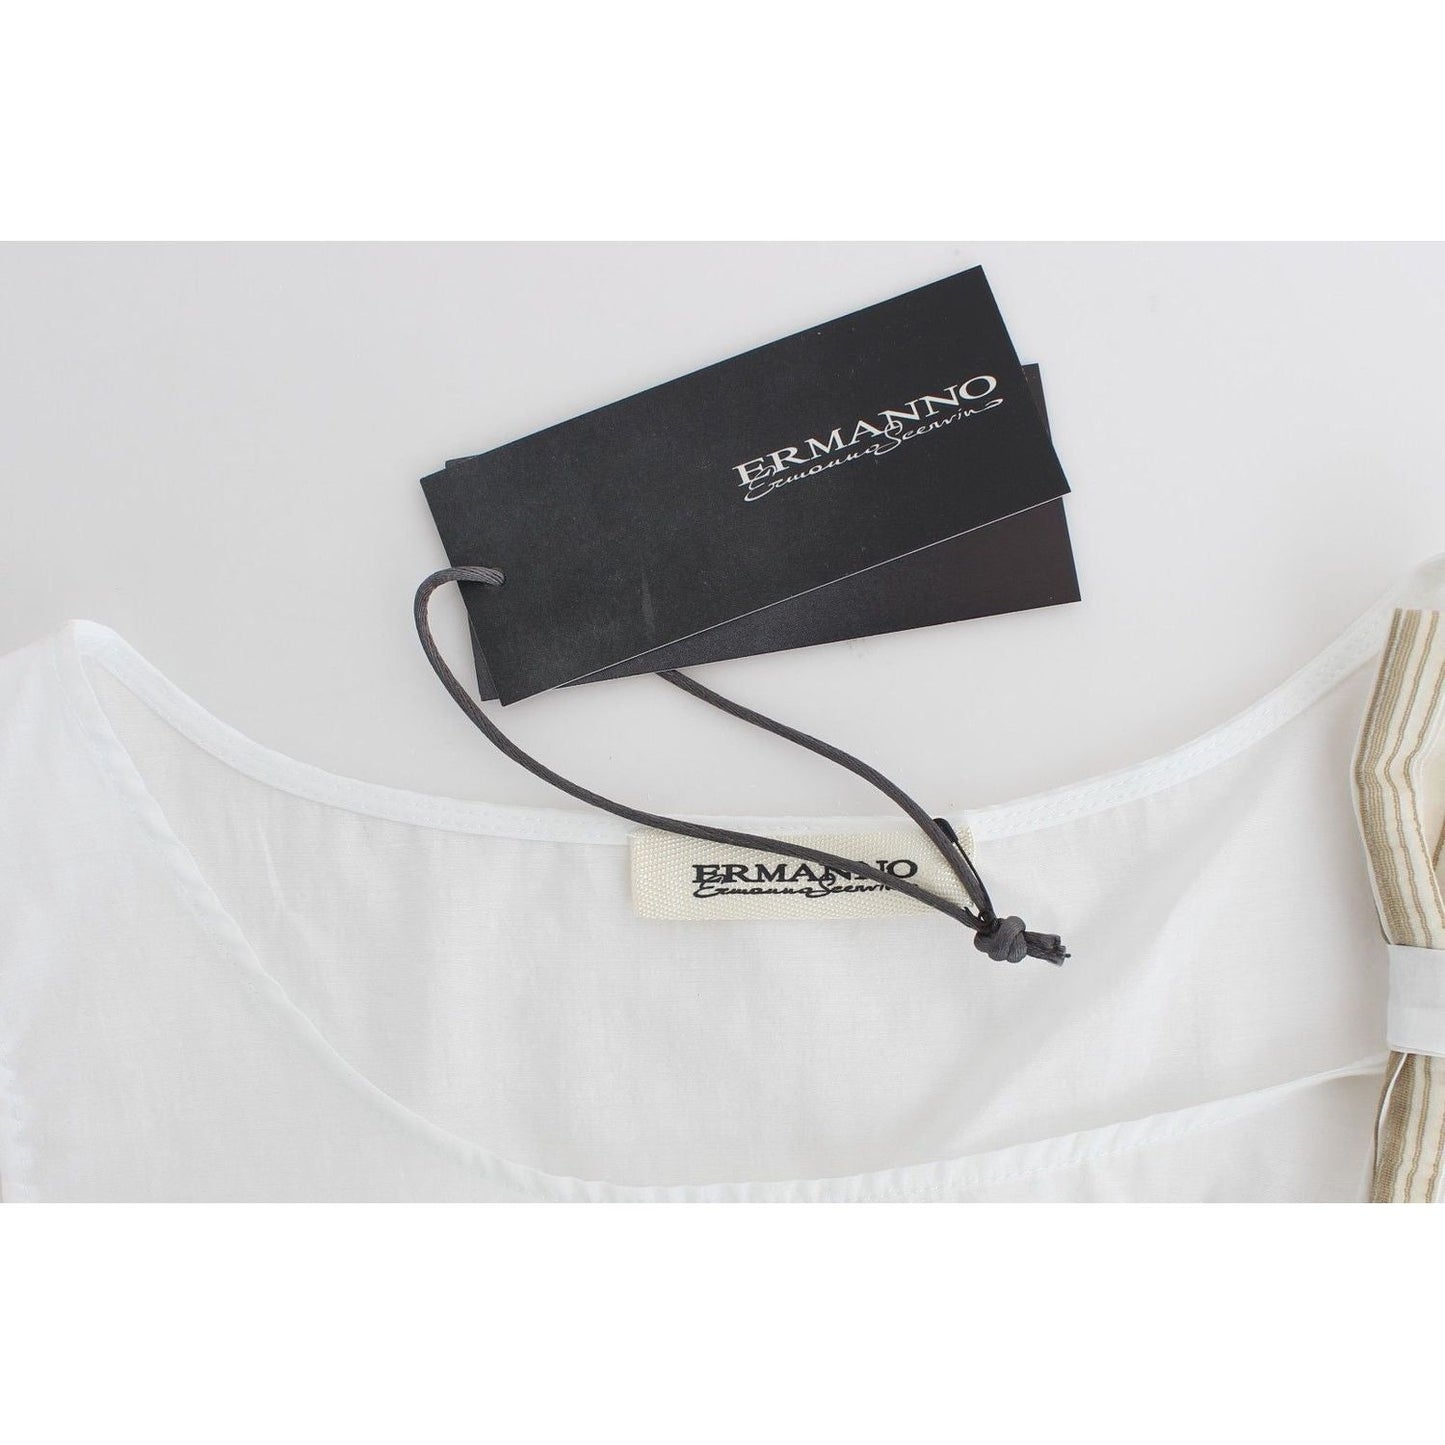 Ermanno Scervino Elegant White Bow-Detailed Sleeveless Top white-top-blouse-tank-shirt-sleeveless